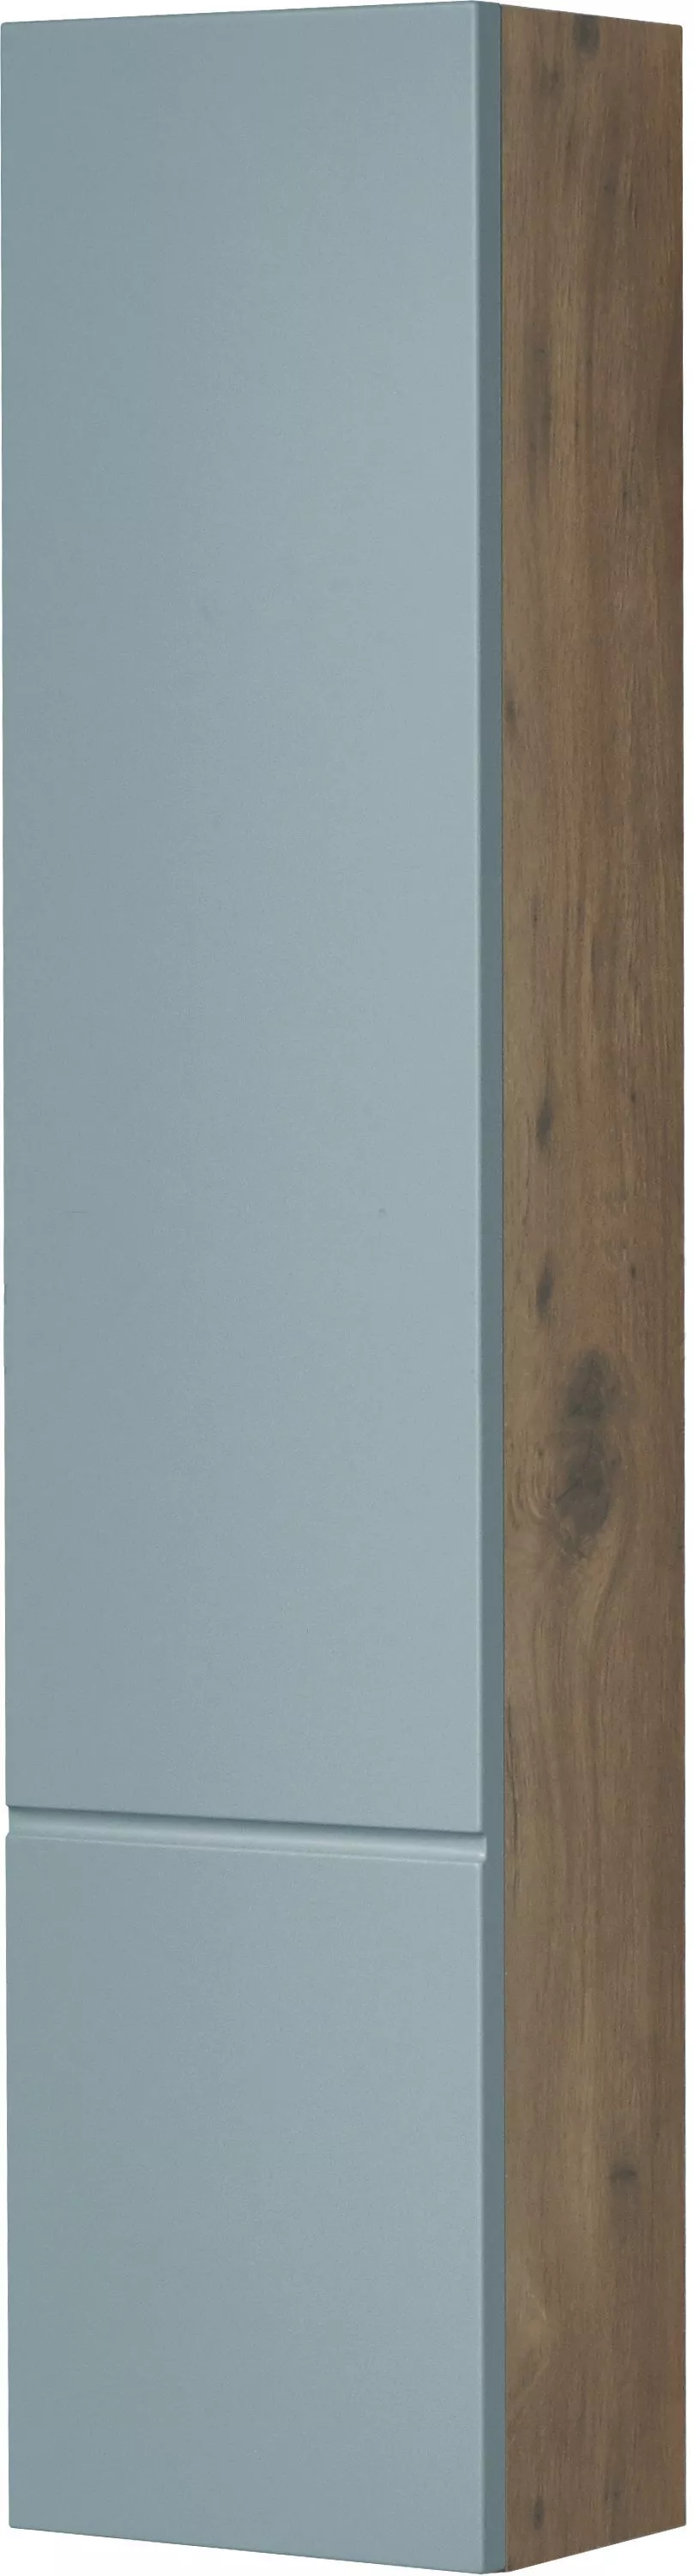 Шкаф AQUATON Мишель 23 дуб рустикальный/фьорд, цвет голубой 1A244303MIX30 - фото 1